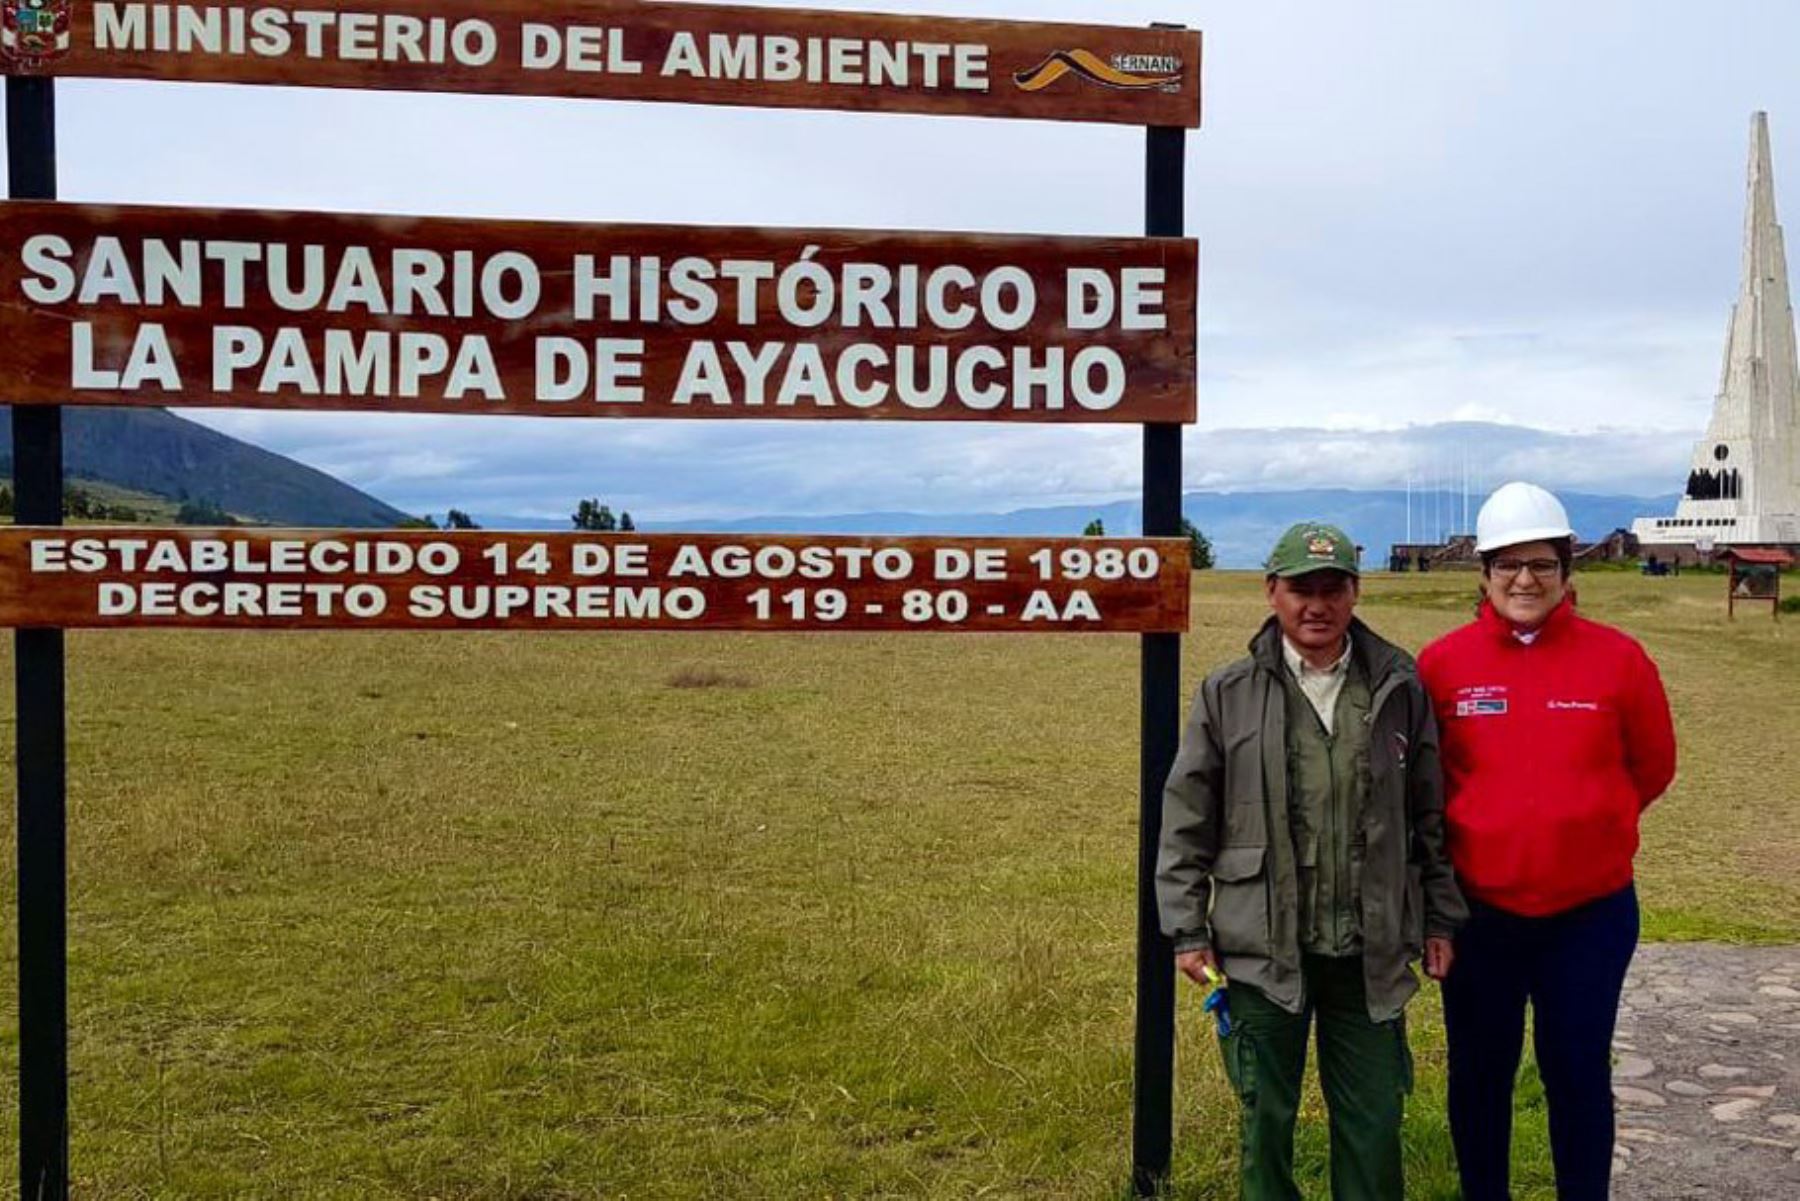 La ministra del Ambiente, Lucía Ruiz, visitó el Santuario Histórico de la Pampa de Ayacucho, donde se reunió con el guardaparques Julio Robles.